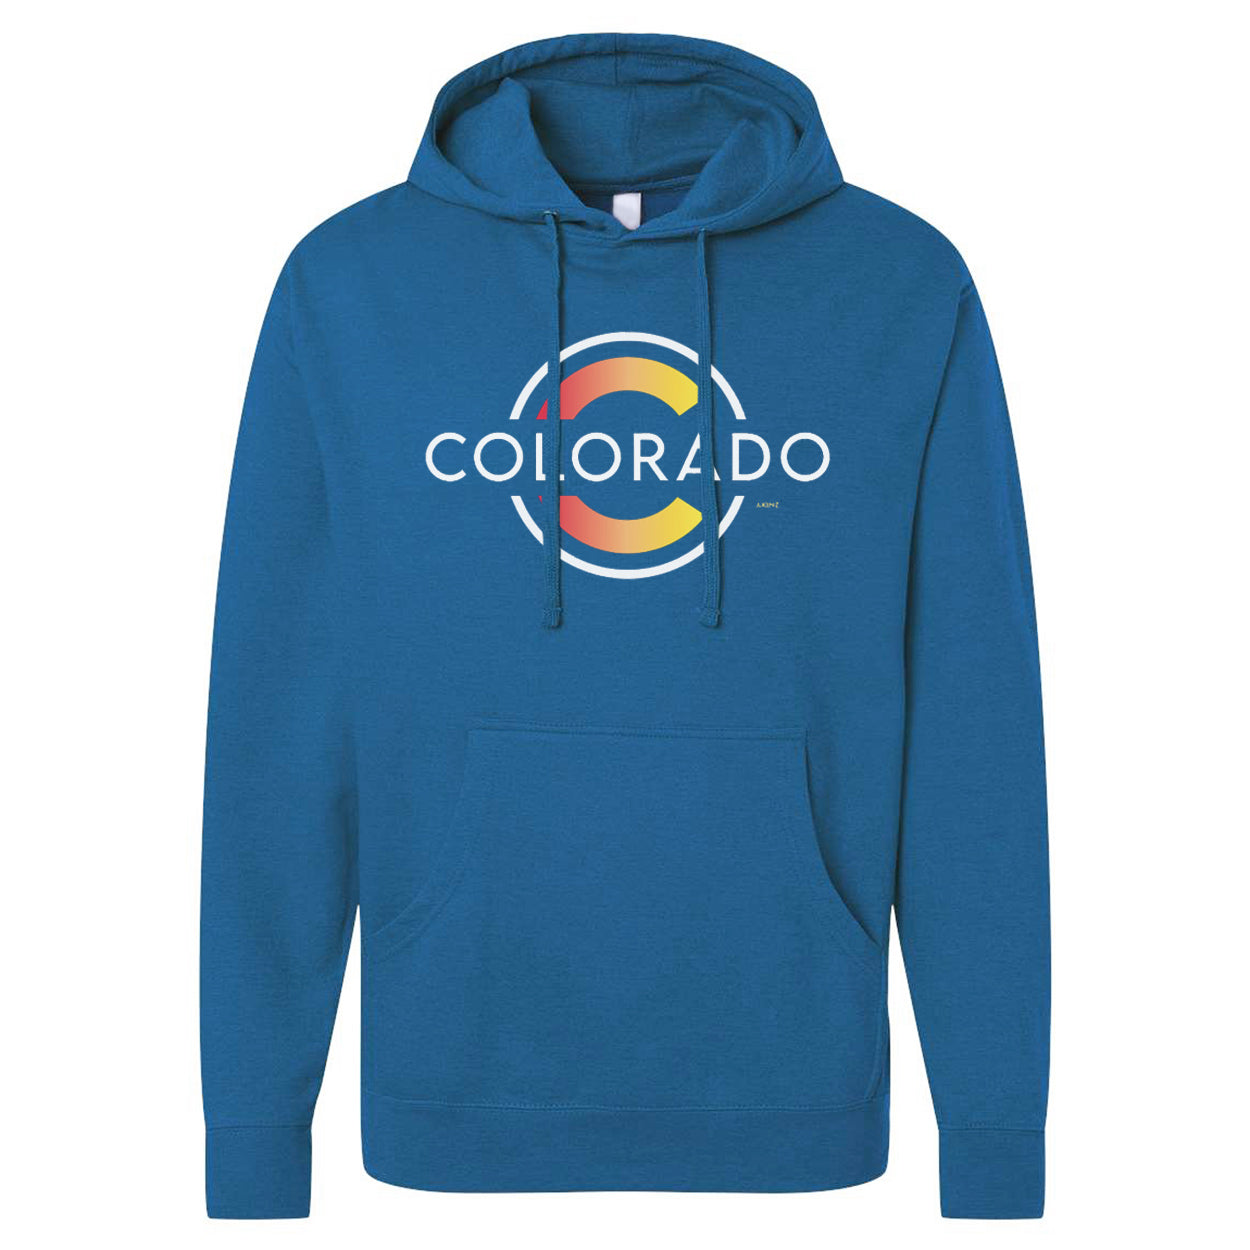 Classic-colorado-hoodie.jpg